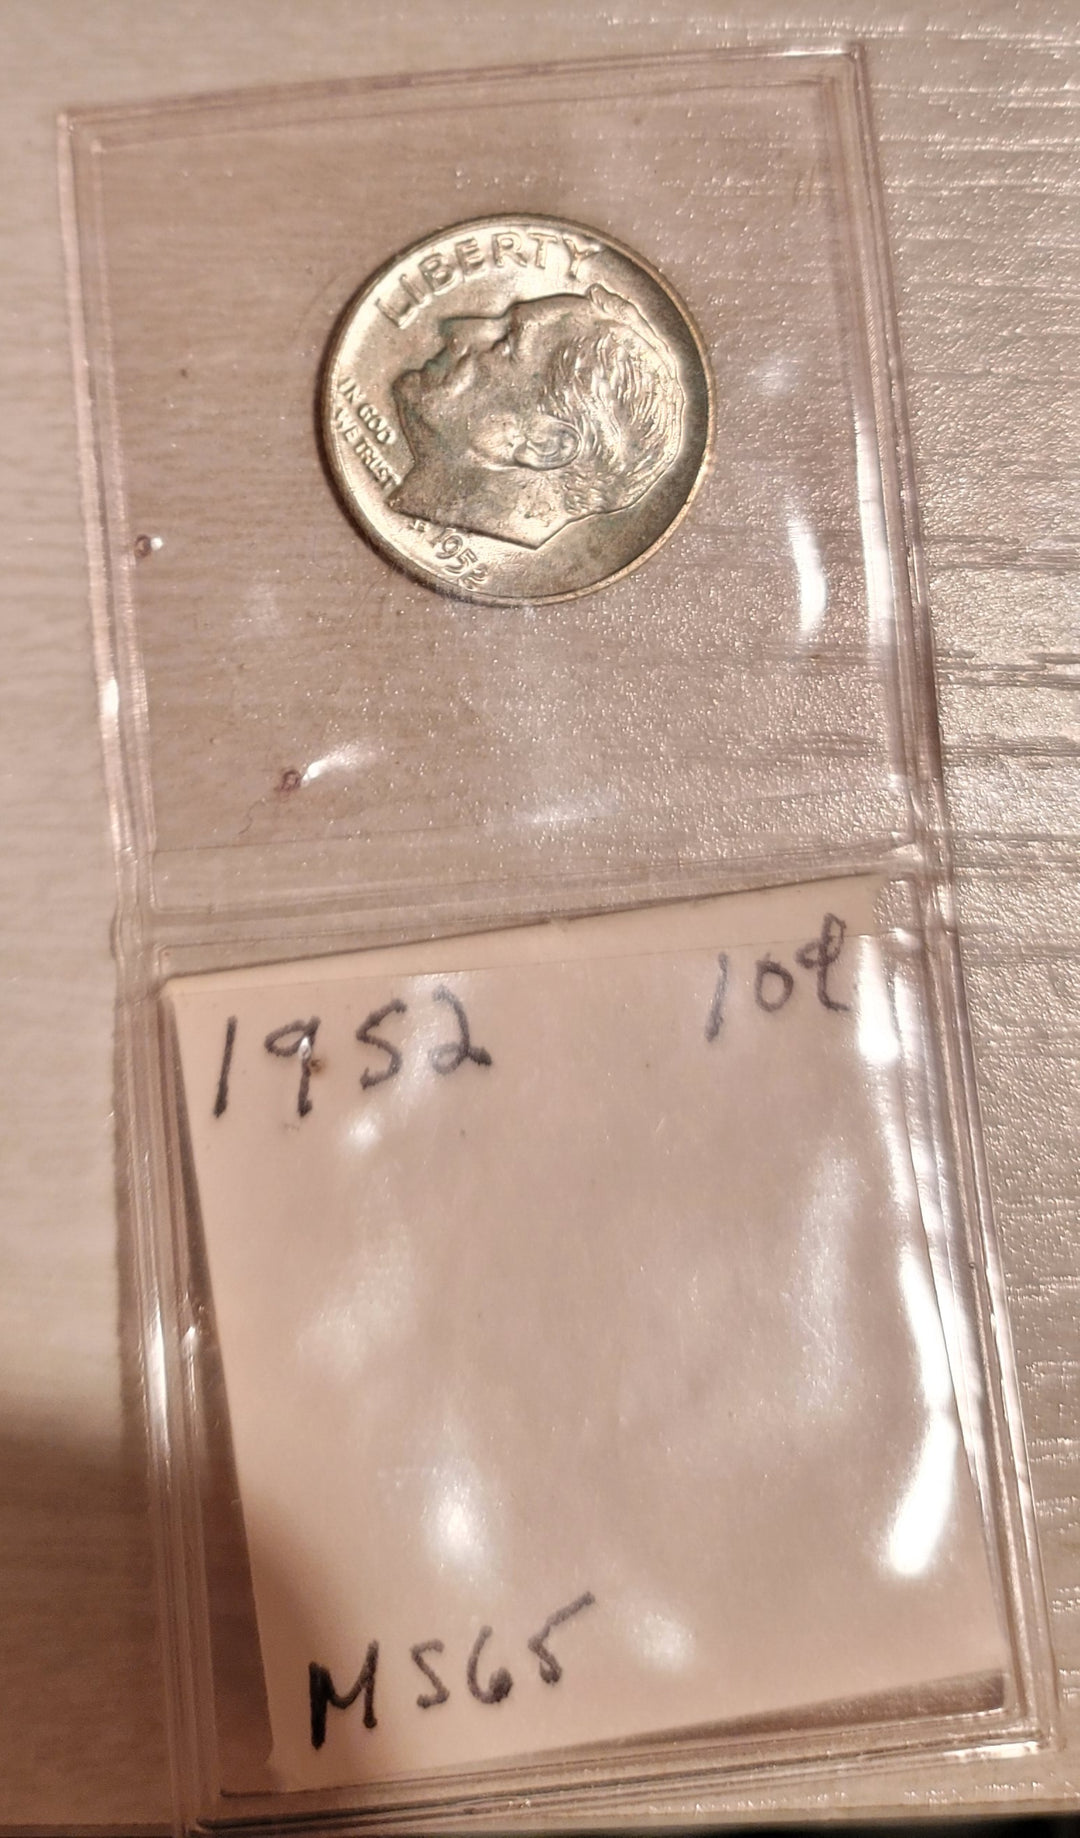 1952 Roosevelt Dime Near Mint Silver Coin 90% - Deal Changer